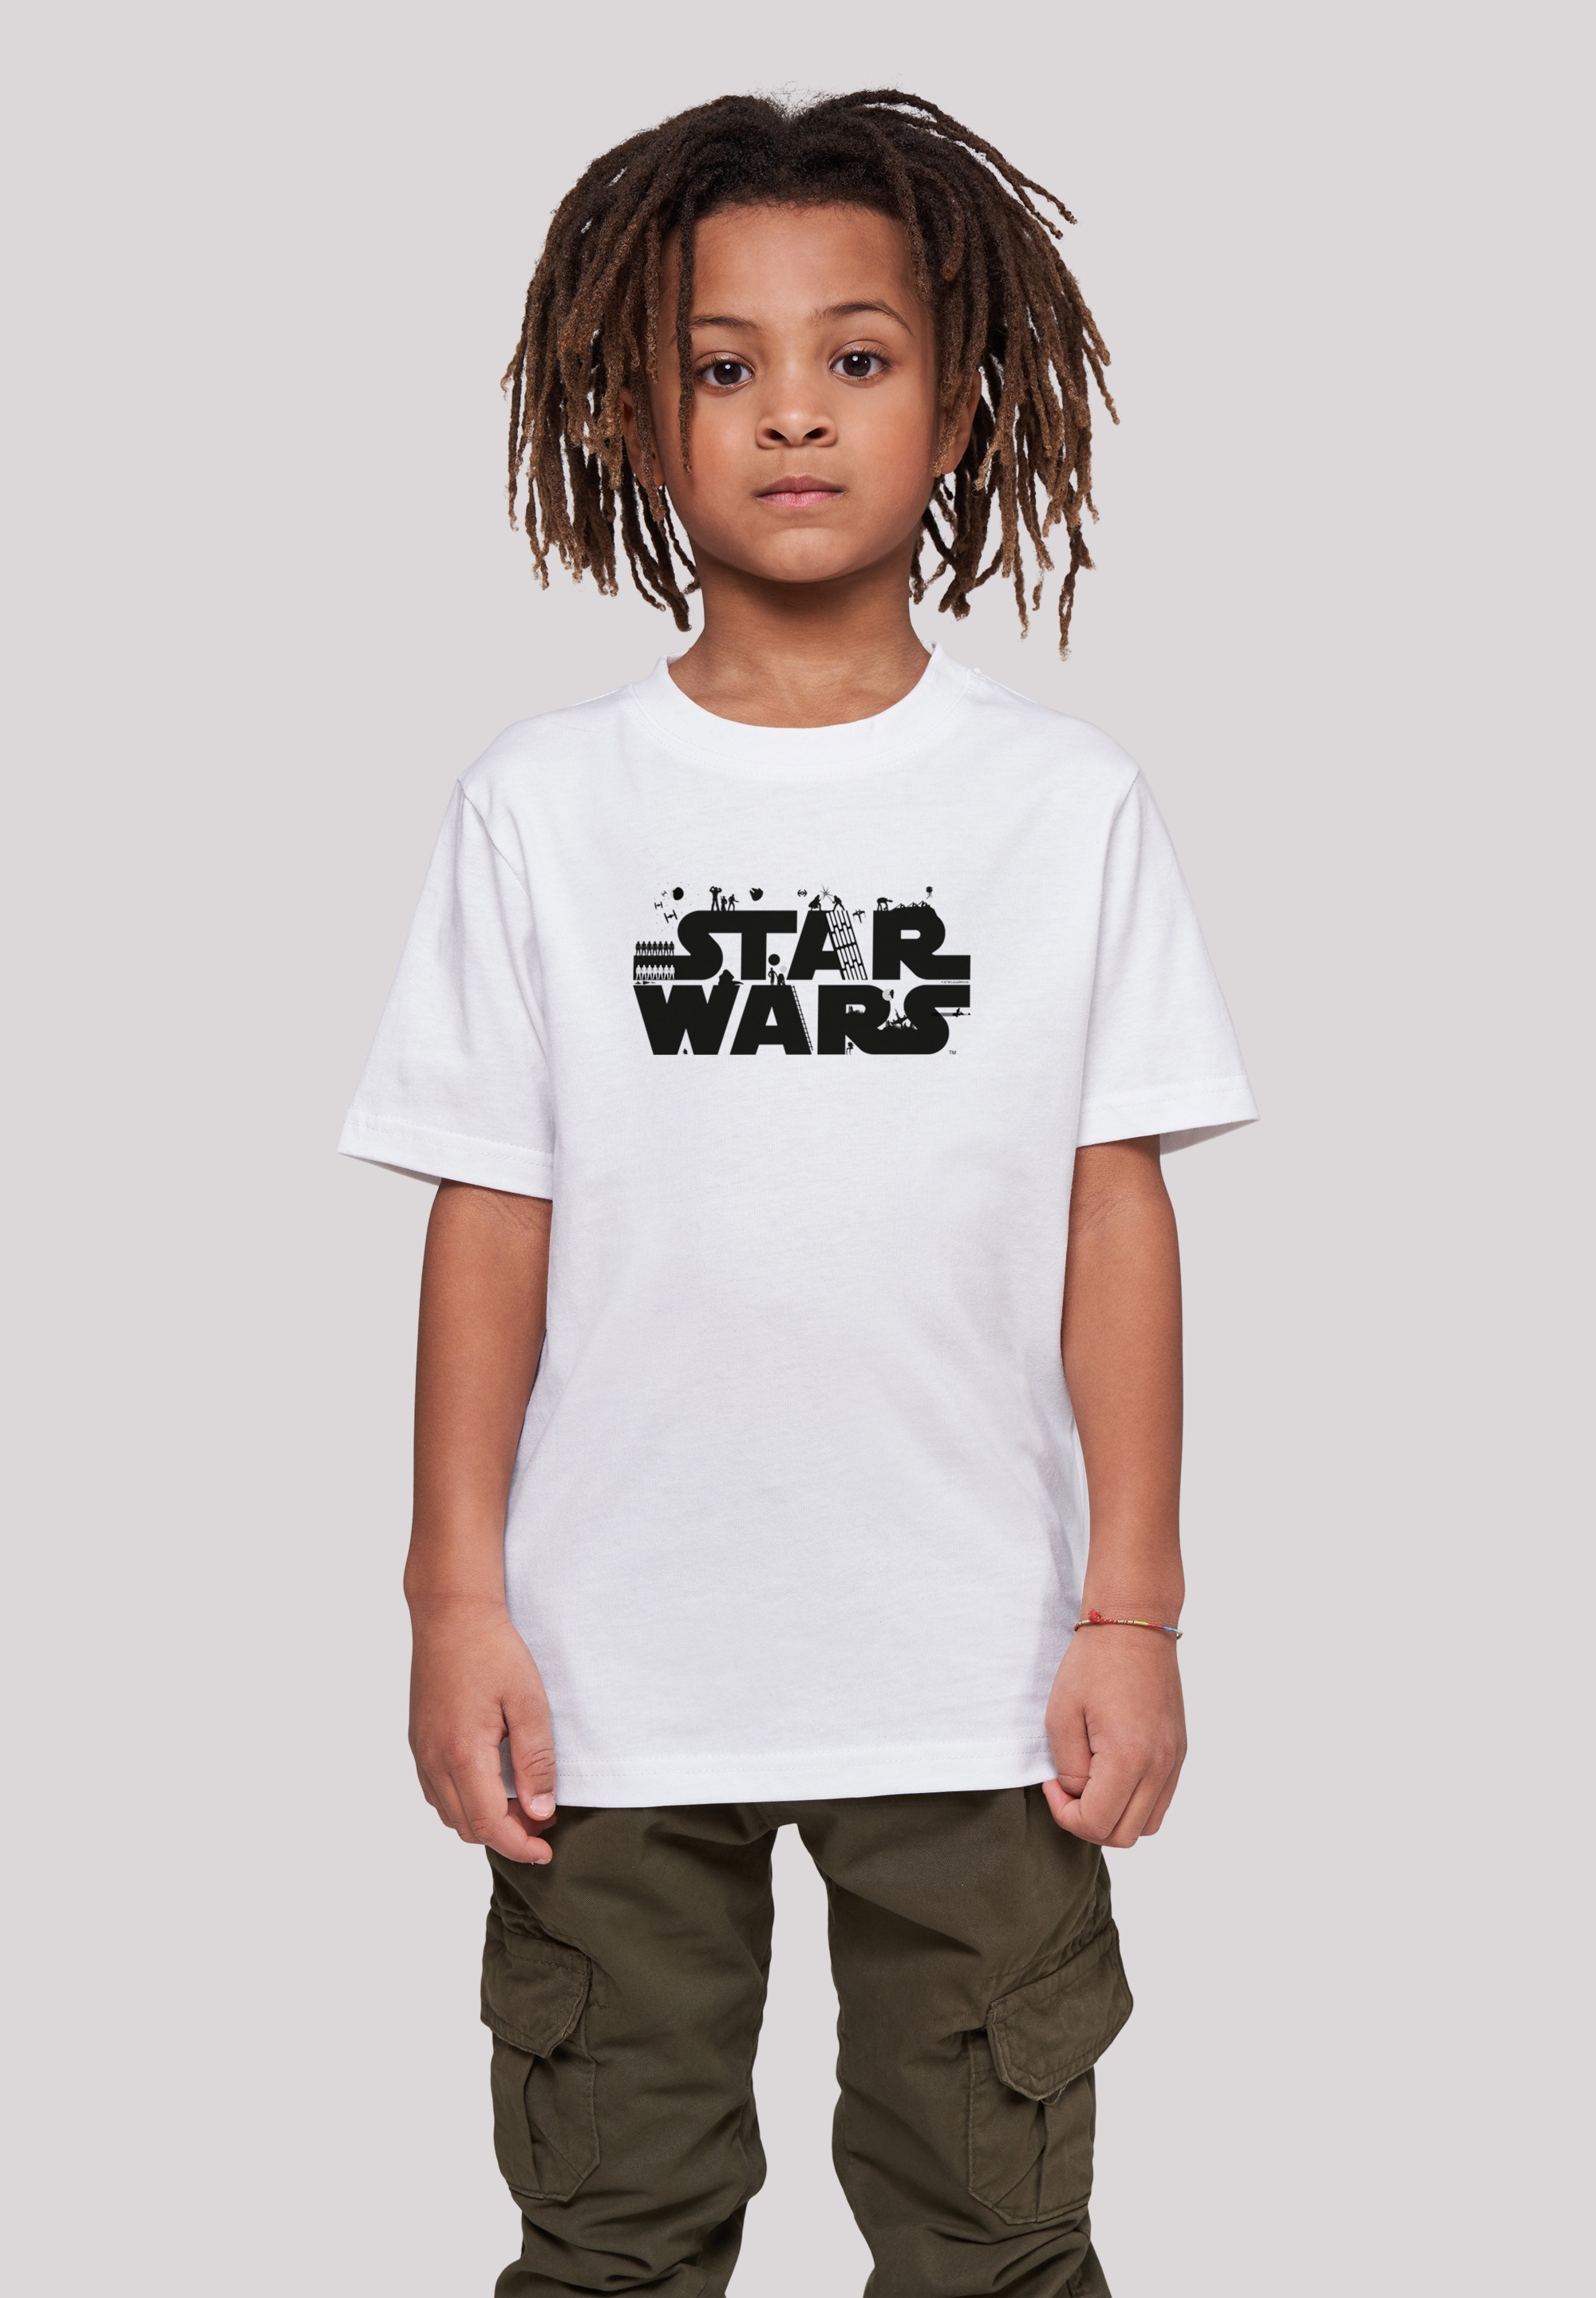 Wars »Star BAUR Minimalist F4NT4STIC für ▷ Unisex Merch, Kinder,Premium T-Shirt | Logo«, Jungen,Mädchen,Bedruckt